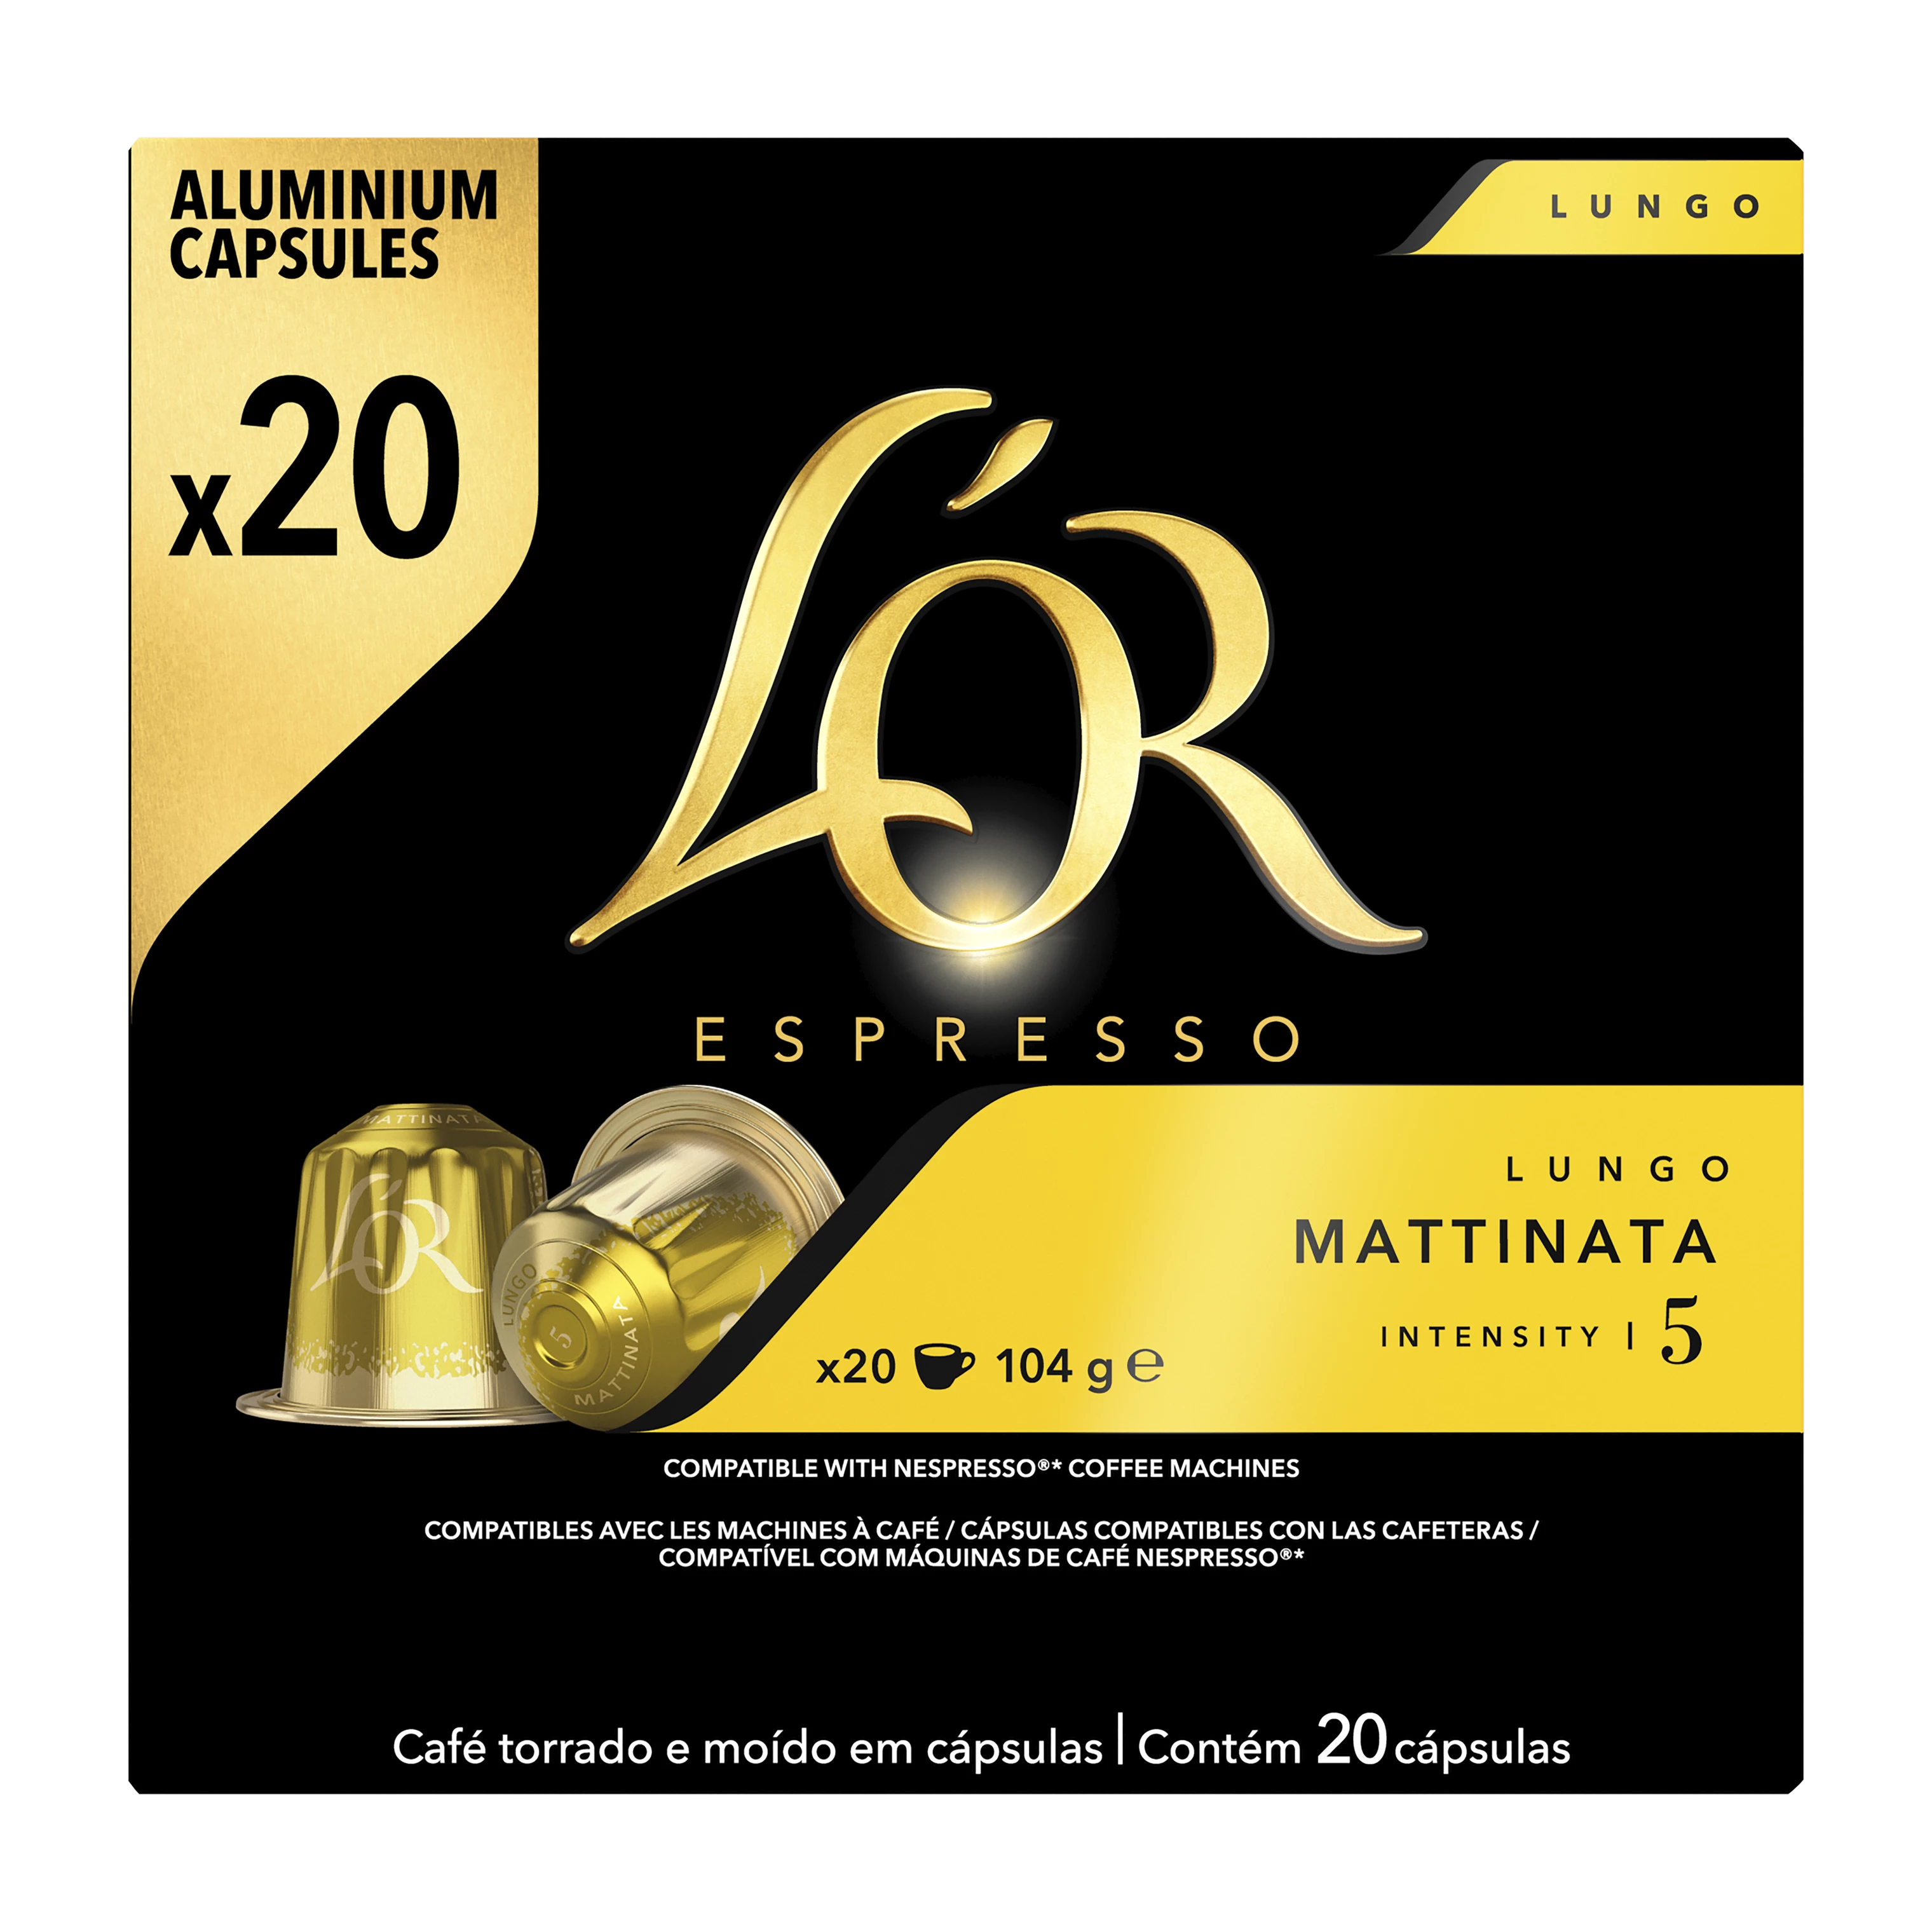 Capsules Café Lungo Mattinata Compatible Nespresso x20; 104g - L'OR